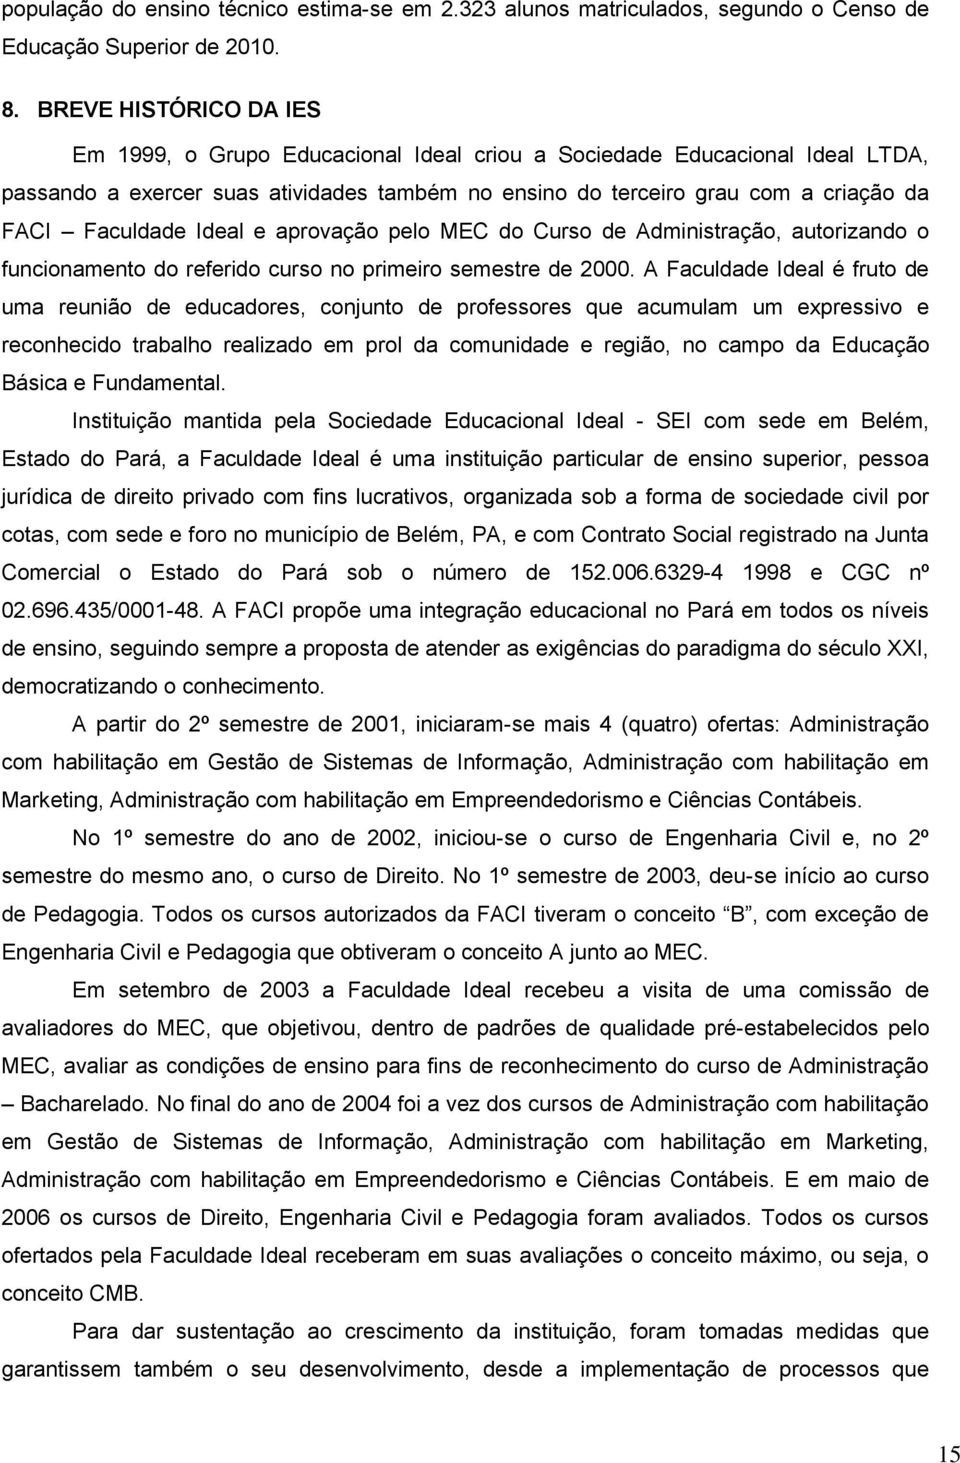 Faculdade Ideal e aprovação pelo MEC do Curso de Administração, autorizando o funcionamento do referido curso no primeiro semestre de 2000.